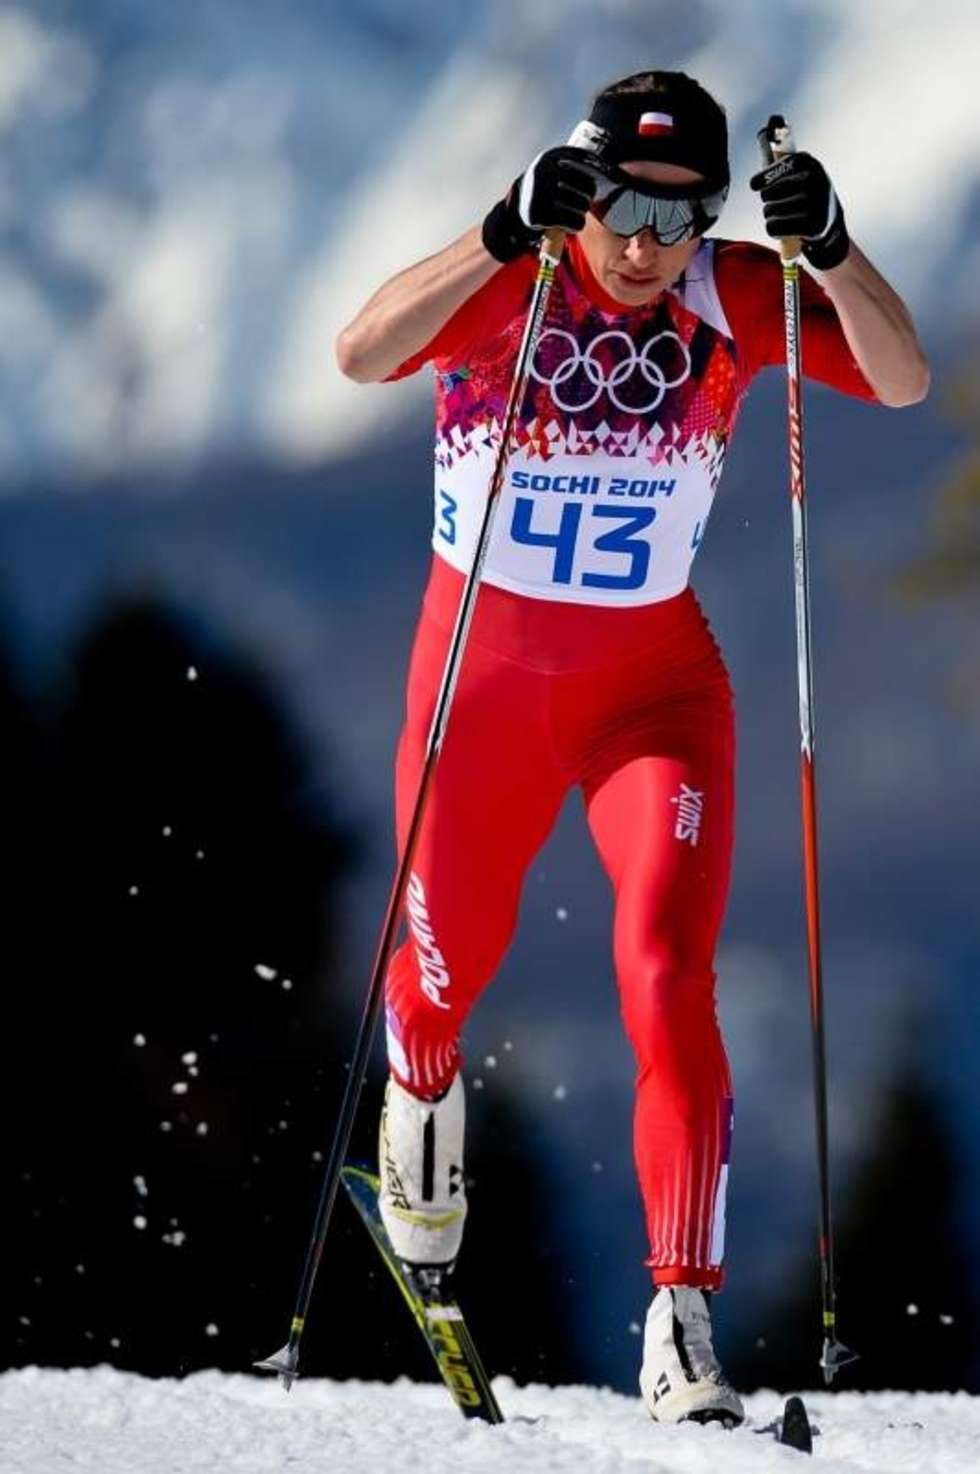  Obawy powiększyły się, gdy na szóstej lokacie ukończyła pierwszy olimpijski start - bieg łączony. Co więcej rewelacyjnie prezentowała się Norweżka Marit Bjoergen. W niedzielę okazało się, że przyczyną słabszej postawy Polki jest złamana kość w lewej stopie. Urazu doznała już trzy tygodnie wcześniej.